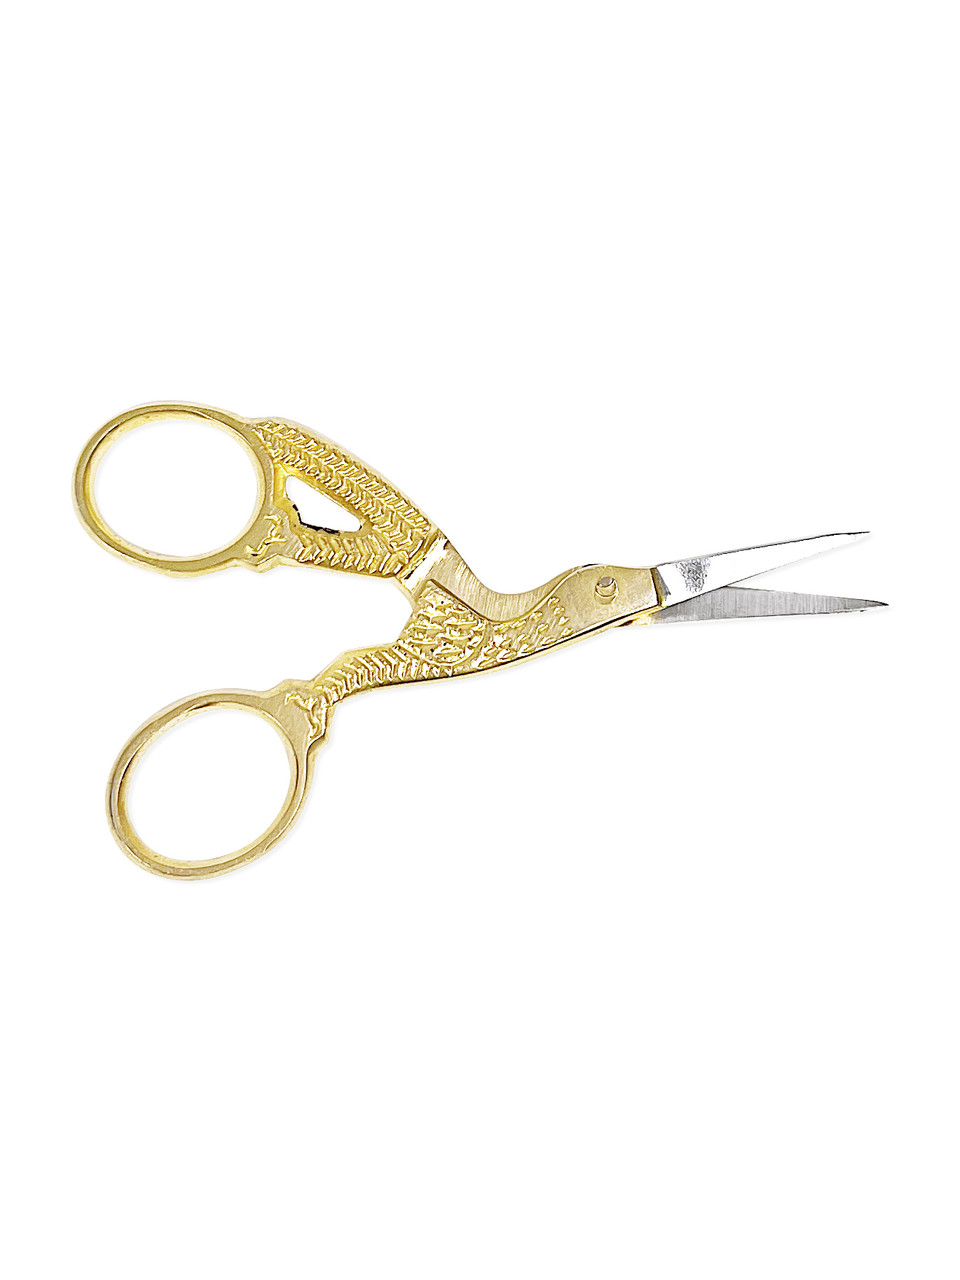 Crane Craft Scissors